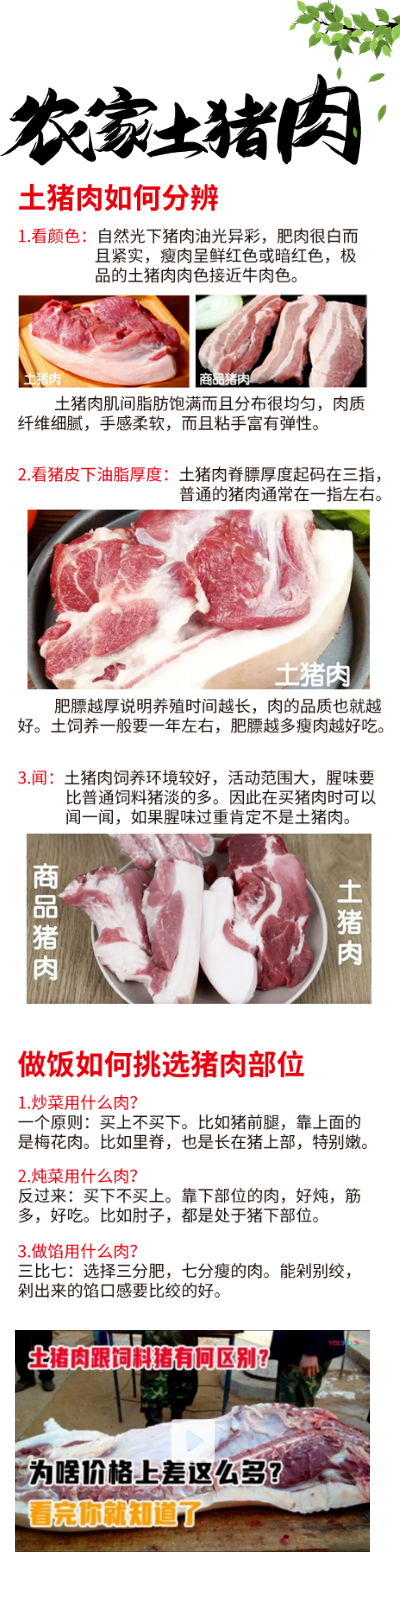 【龙贵超市】农家土猪肉